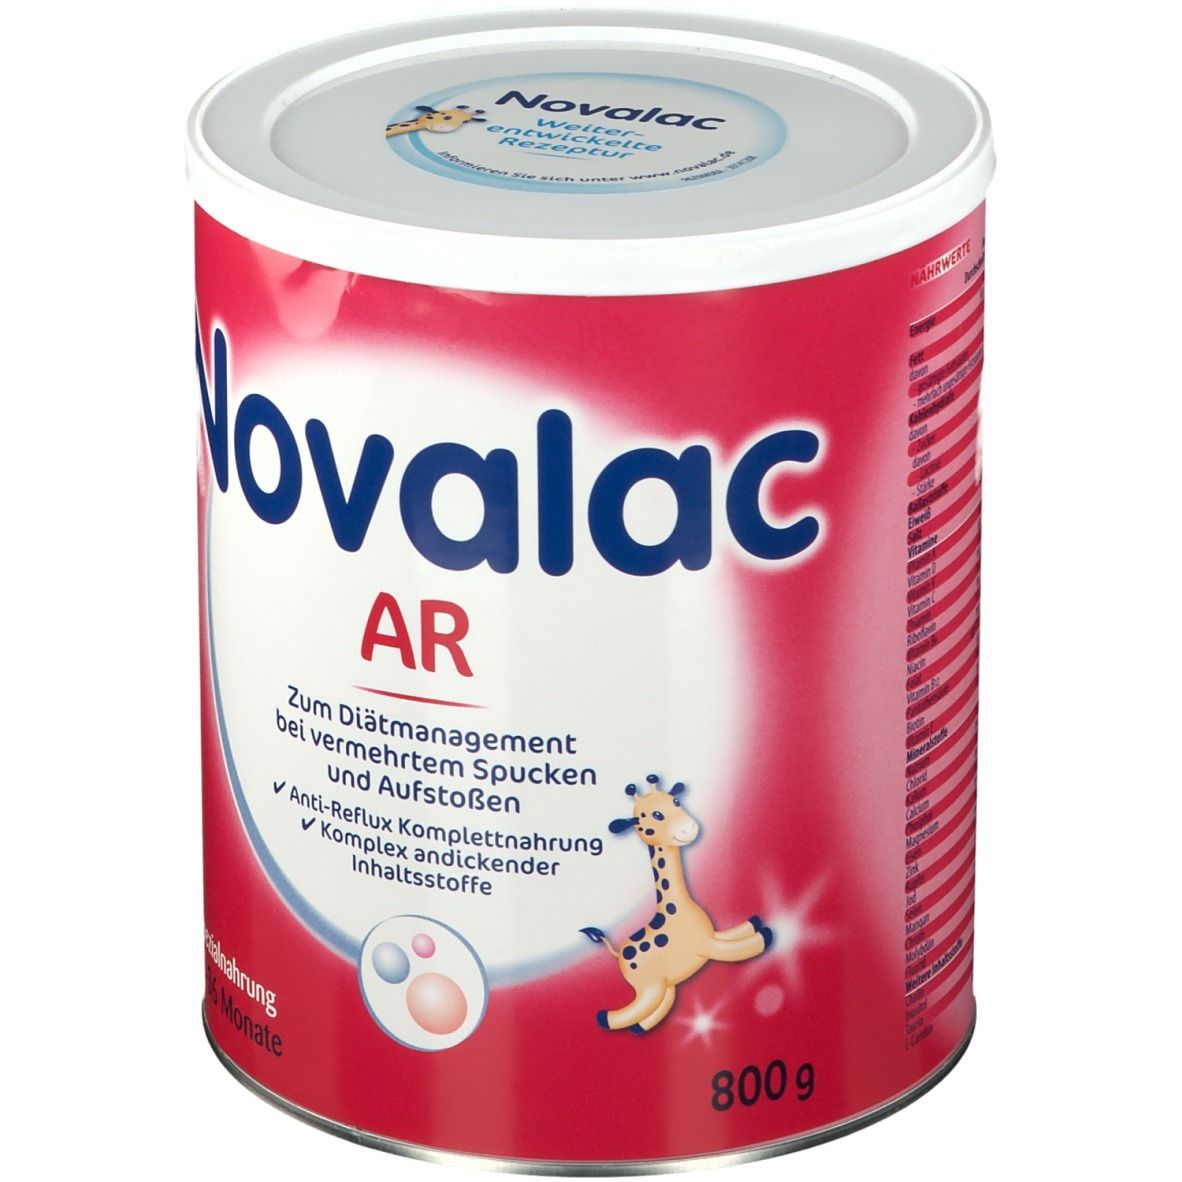 Novalac AR Spezialnahrung Pulver